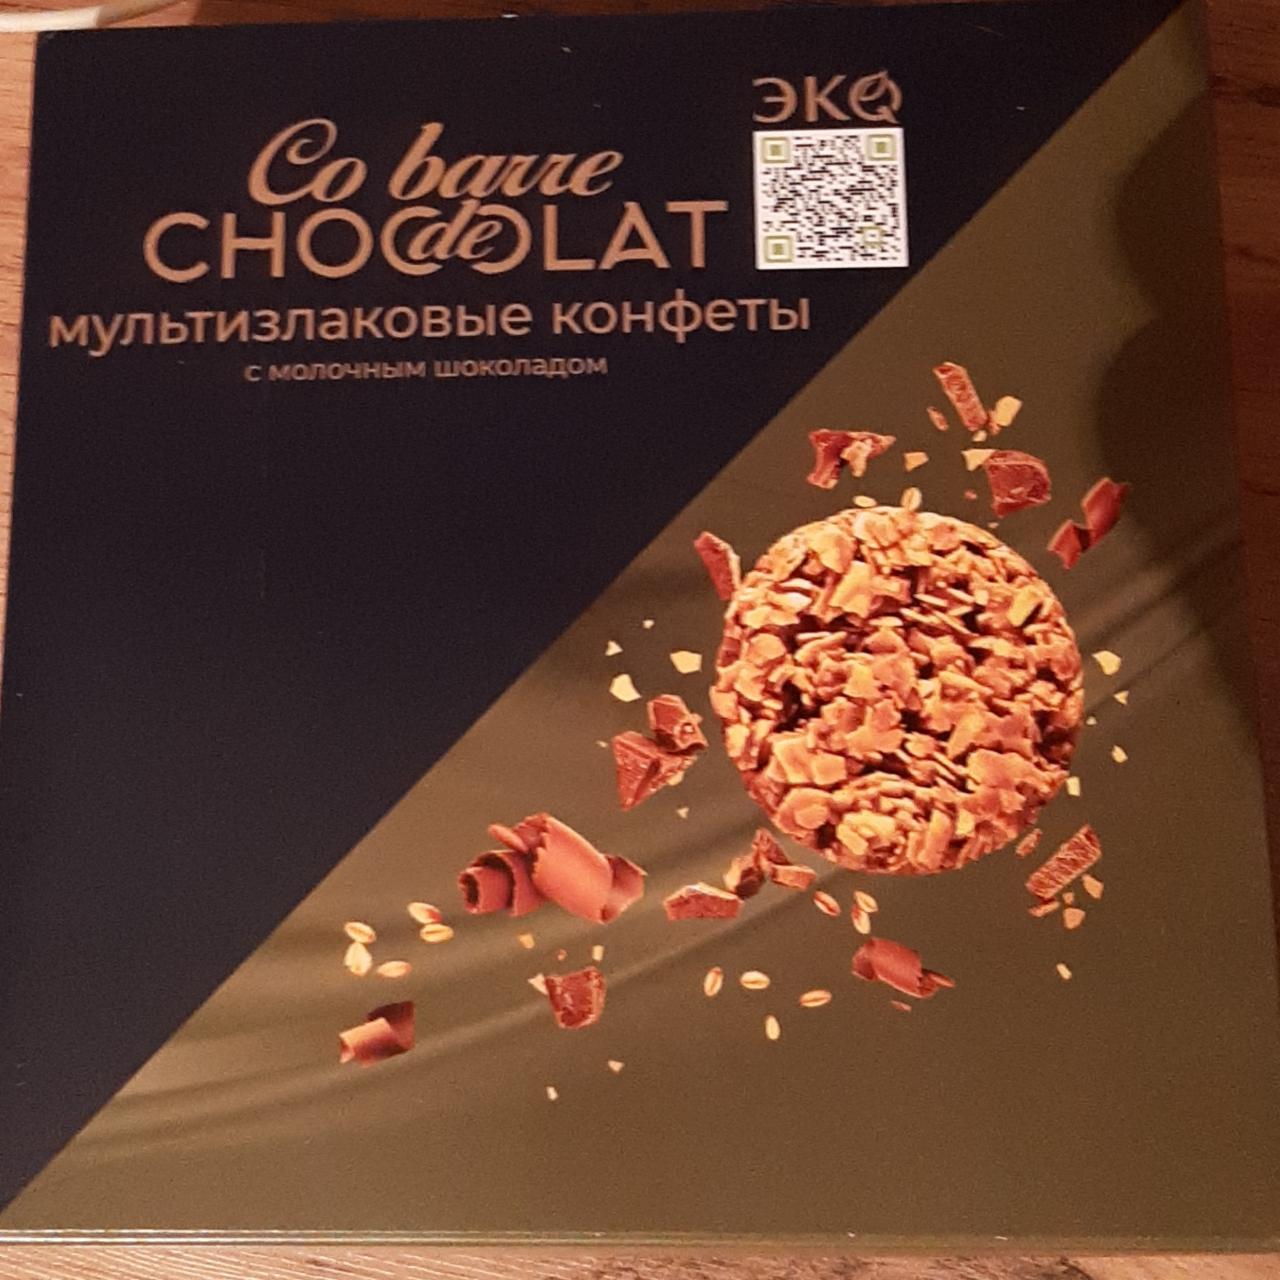 Фото - мультизлаковые конфеты с молочным шоколадом Co barre de chocolate